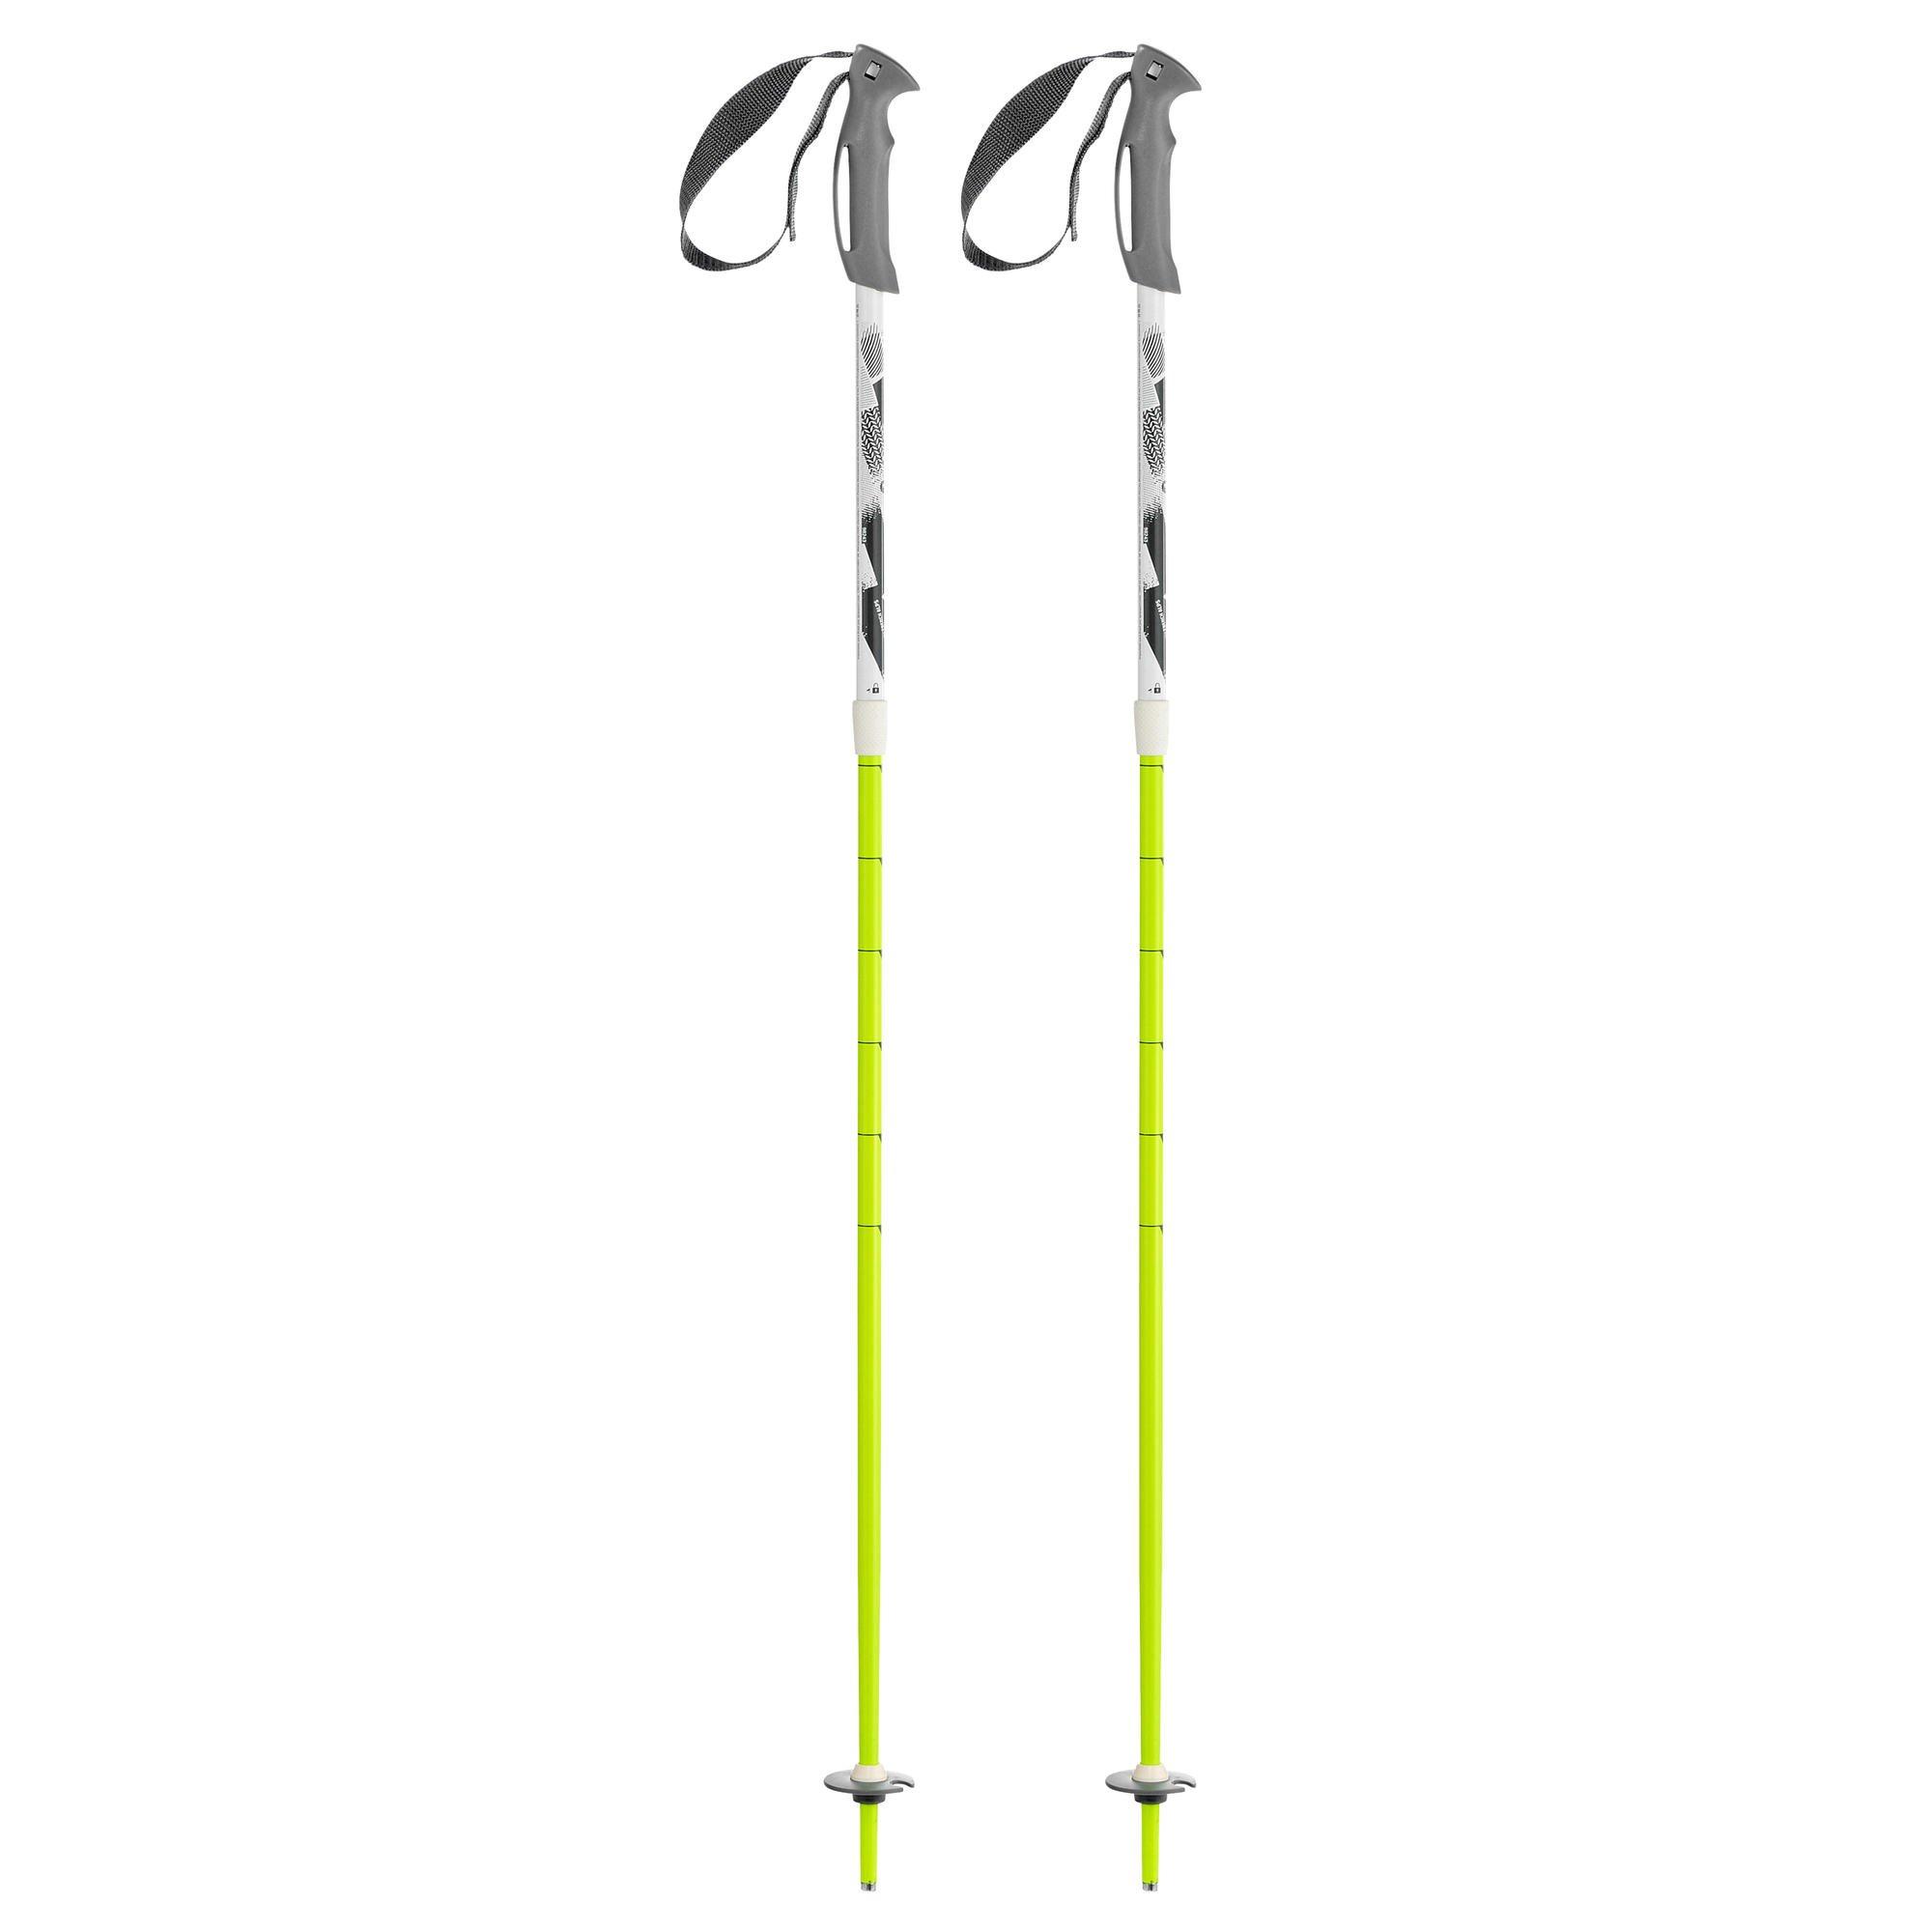 Decathlon Ski Pole - Vario 500